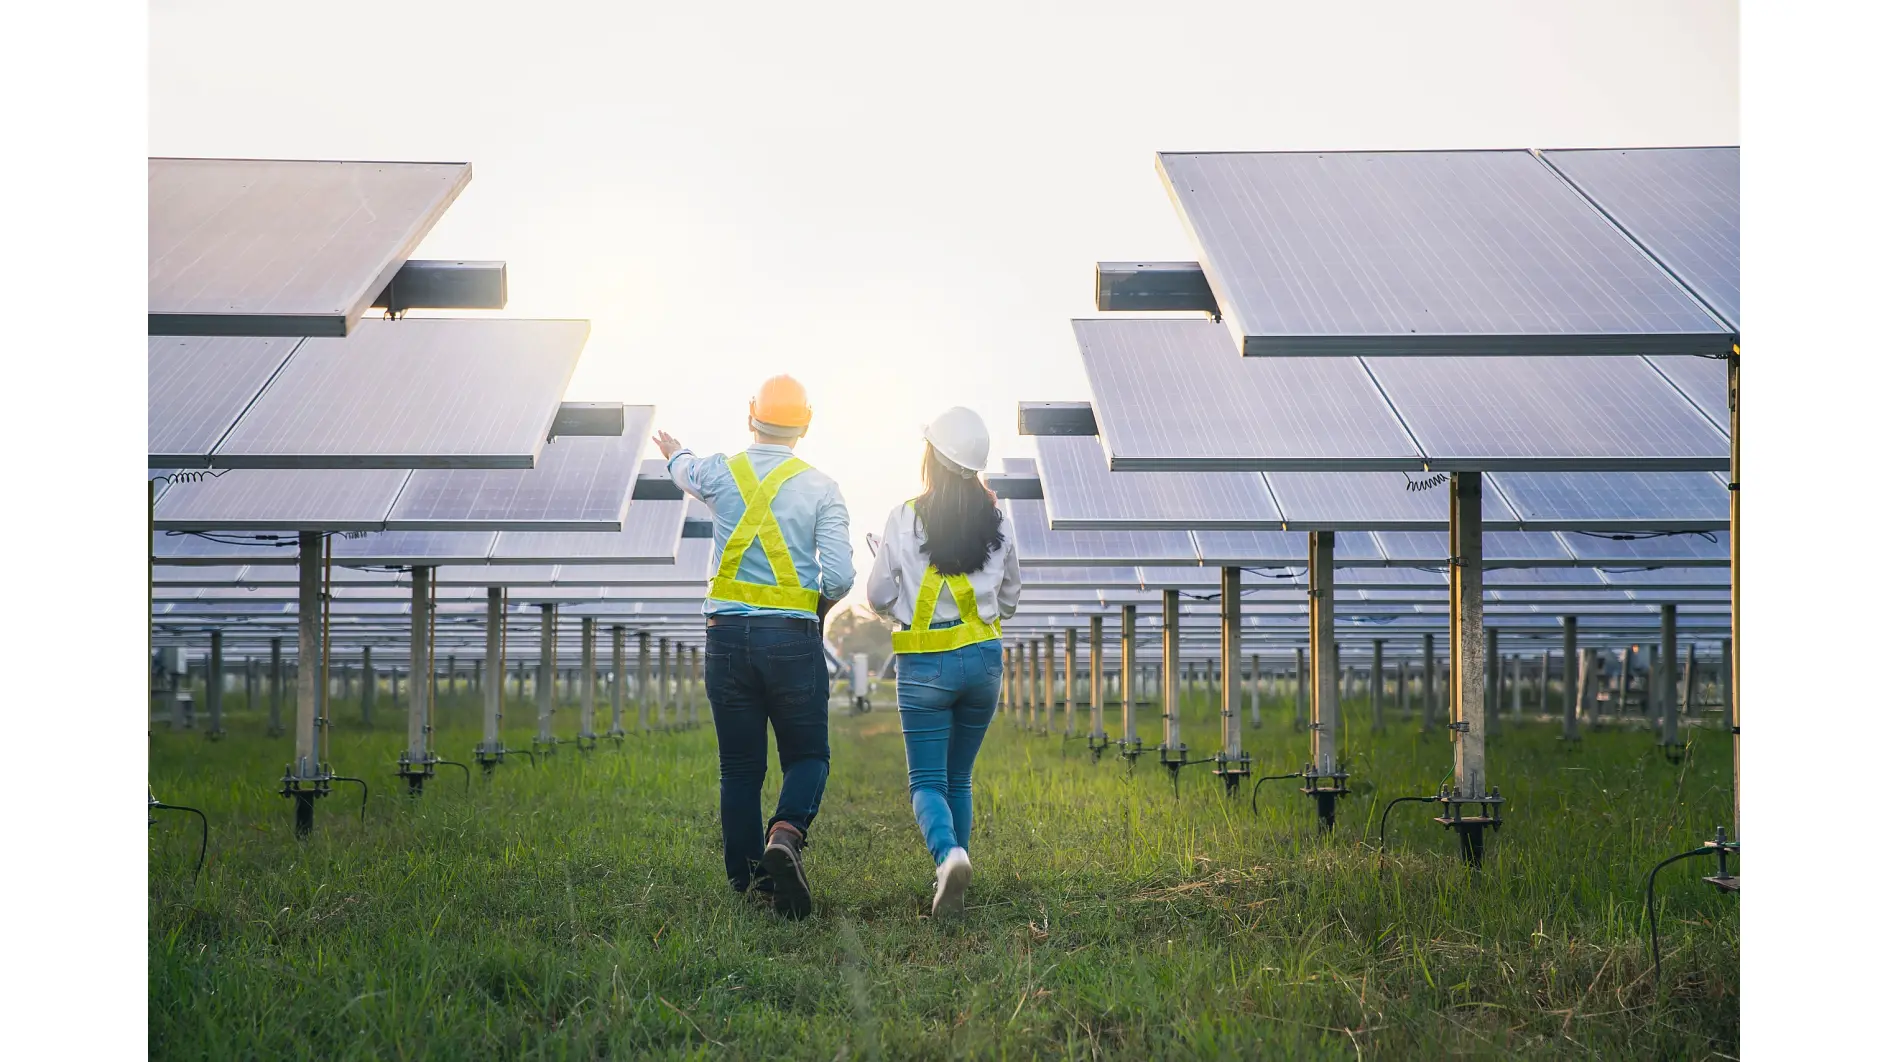 Uomo e donna addetti alla manutenzione dei pannelli per la raccolta dell'energia solare. Ingegnere al lavoro sul controllo e sulla manutenzione delle apparecchiature dell'industria dell'energia solare.